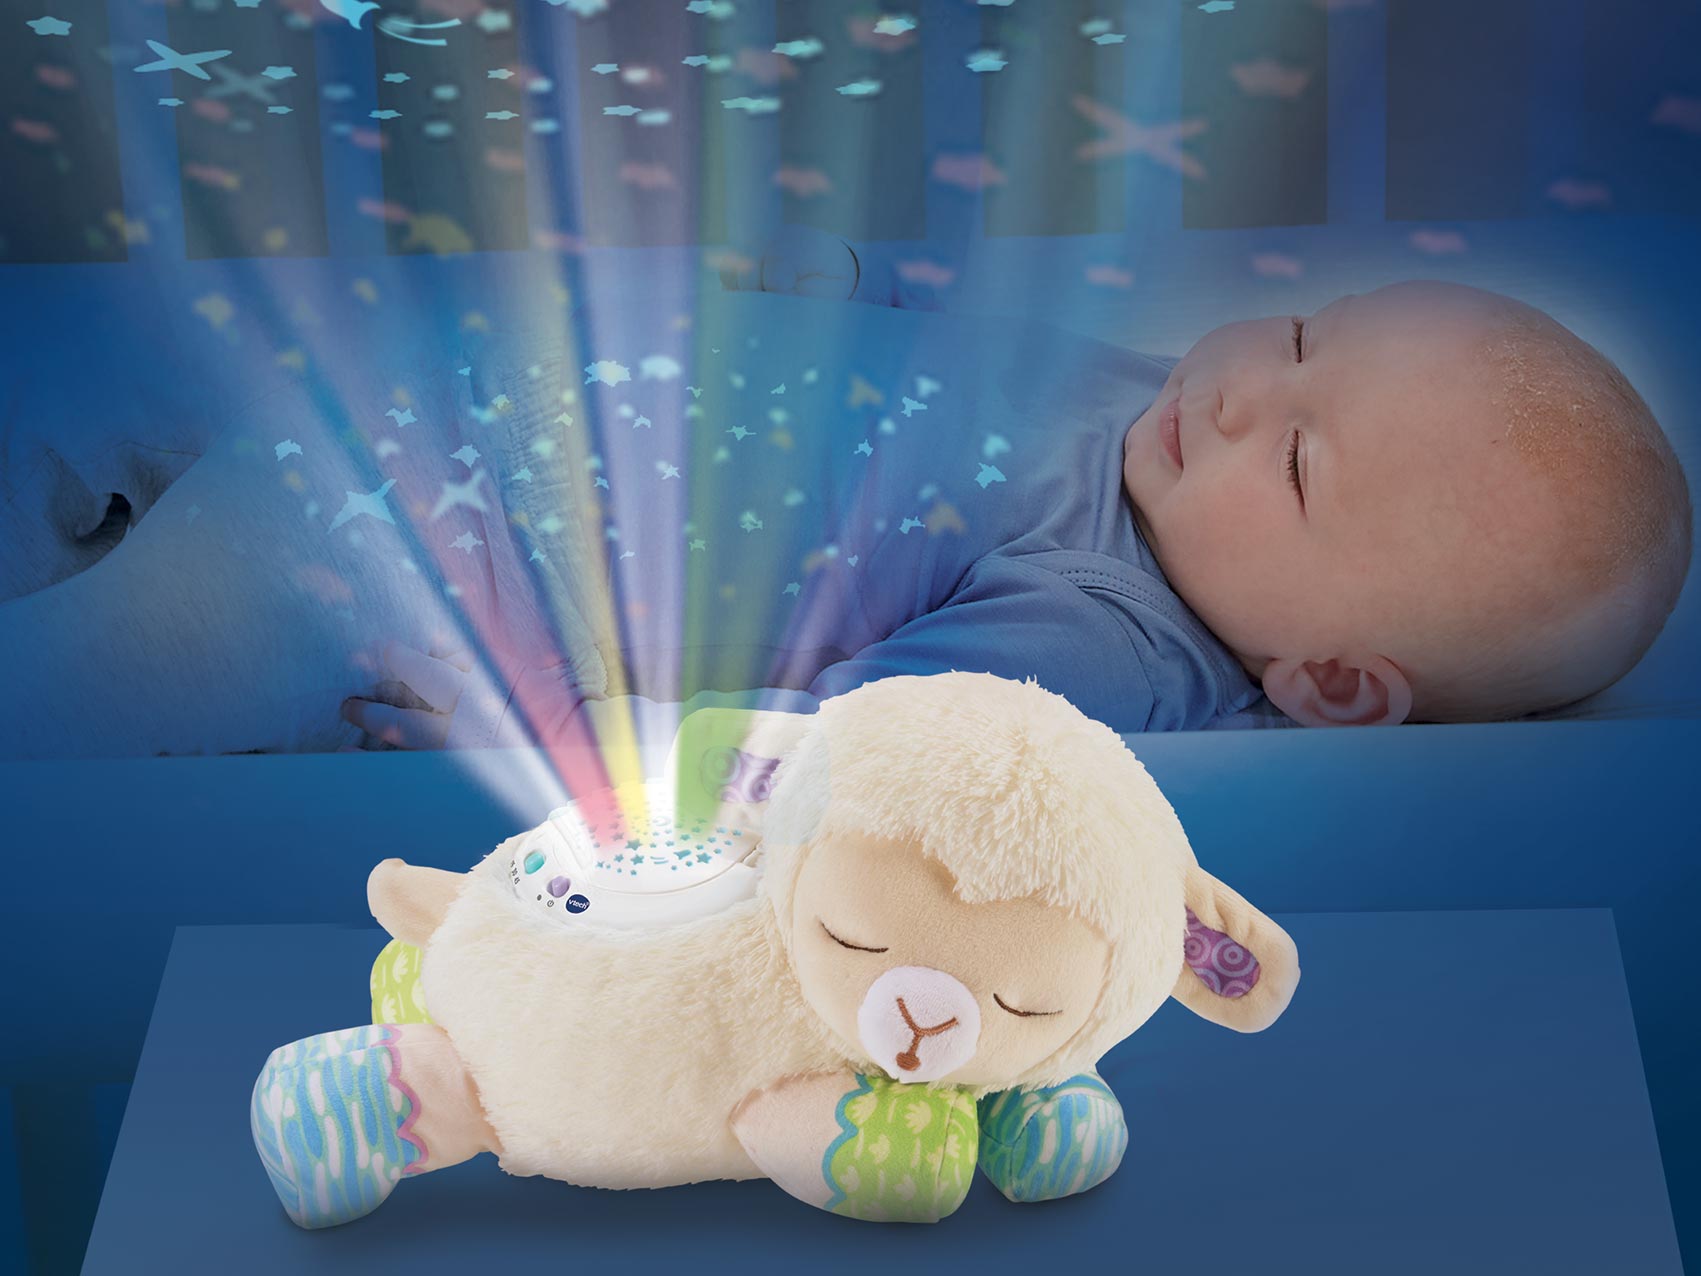 Toupie bébé, son et lumière, Vtech - VTech | Beebs